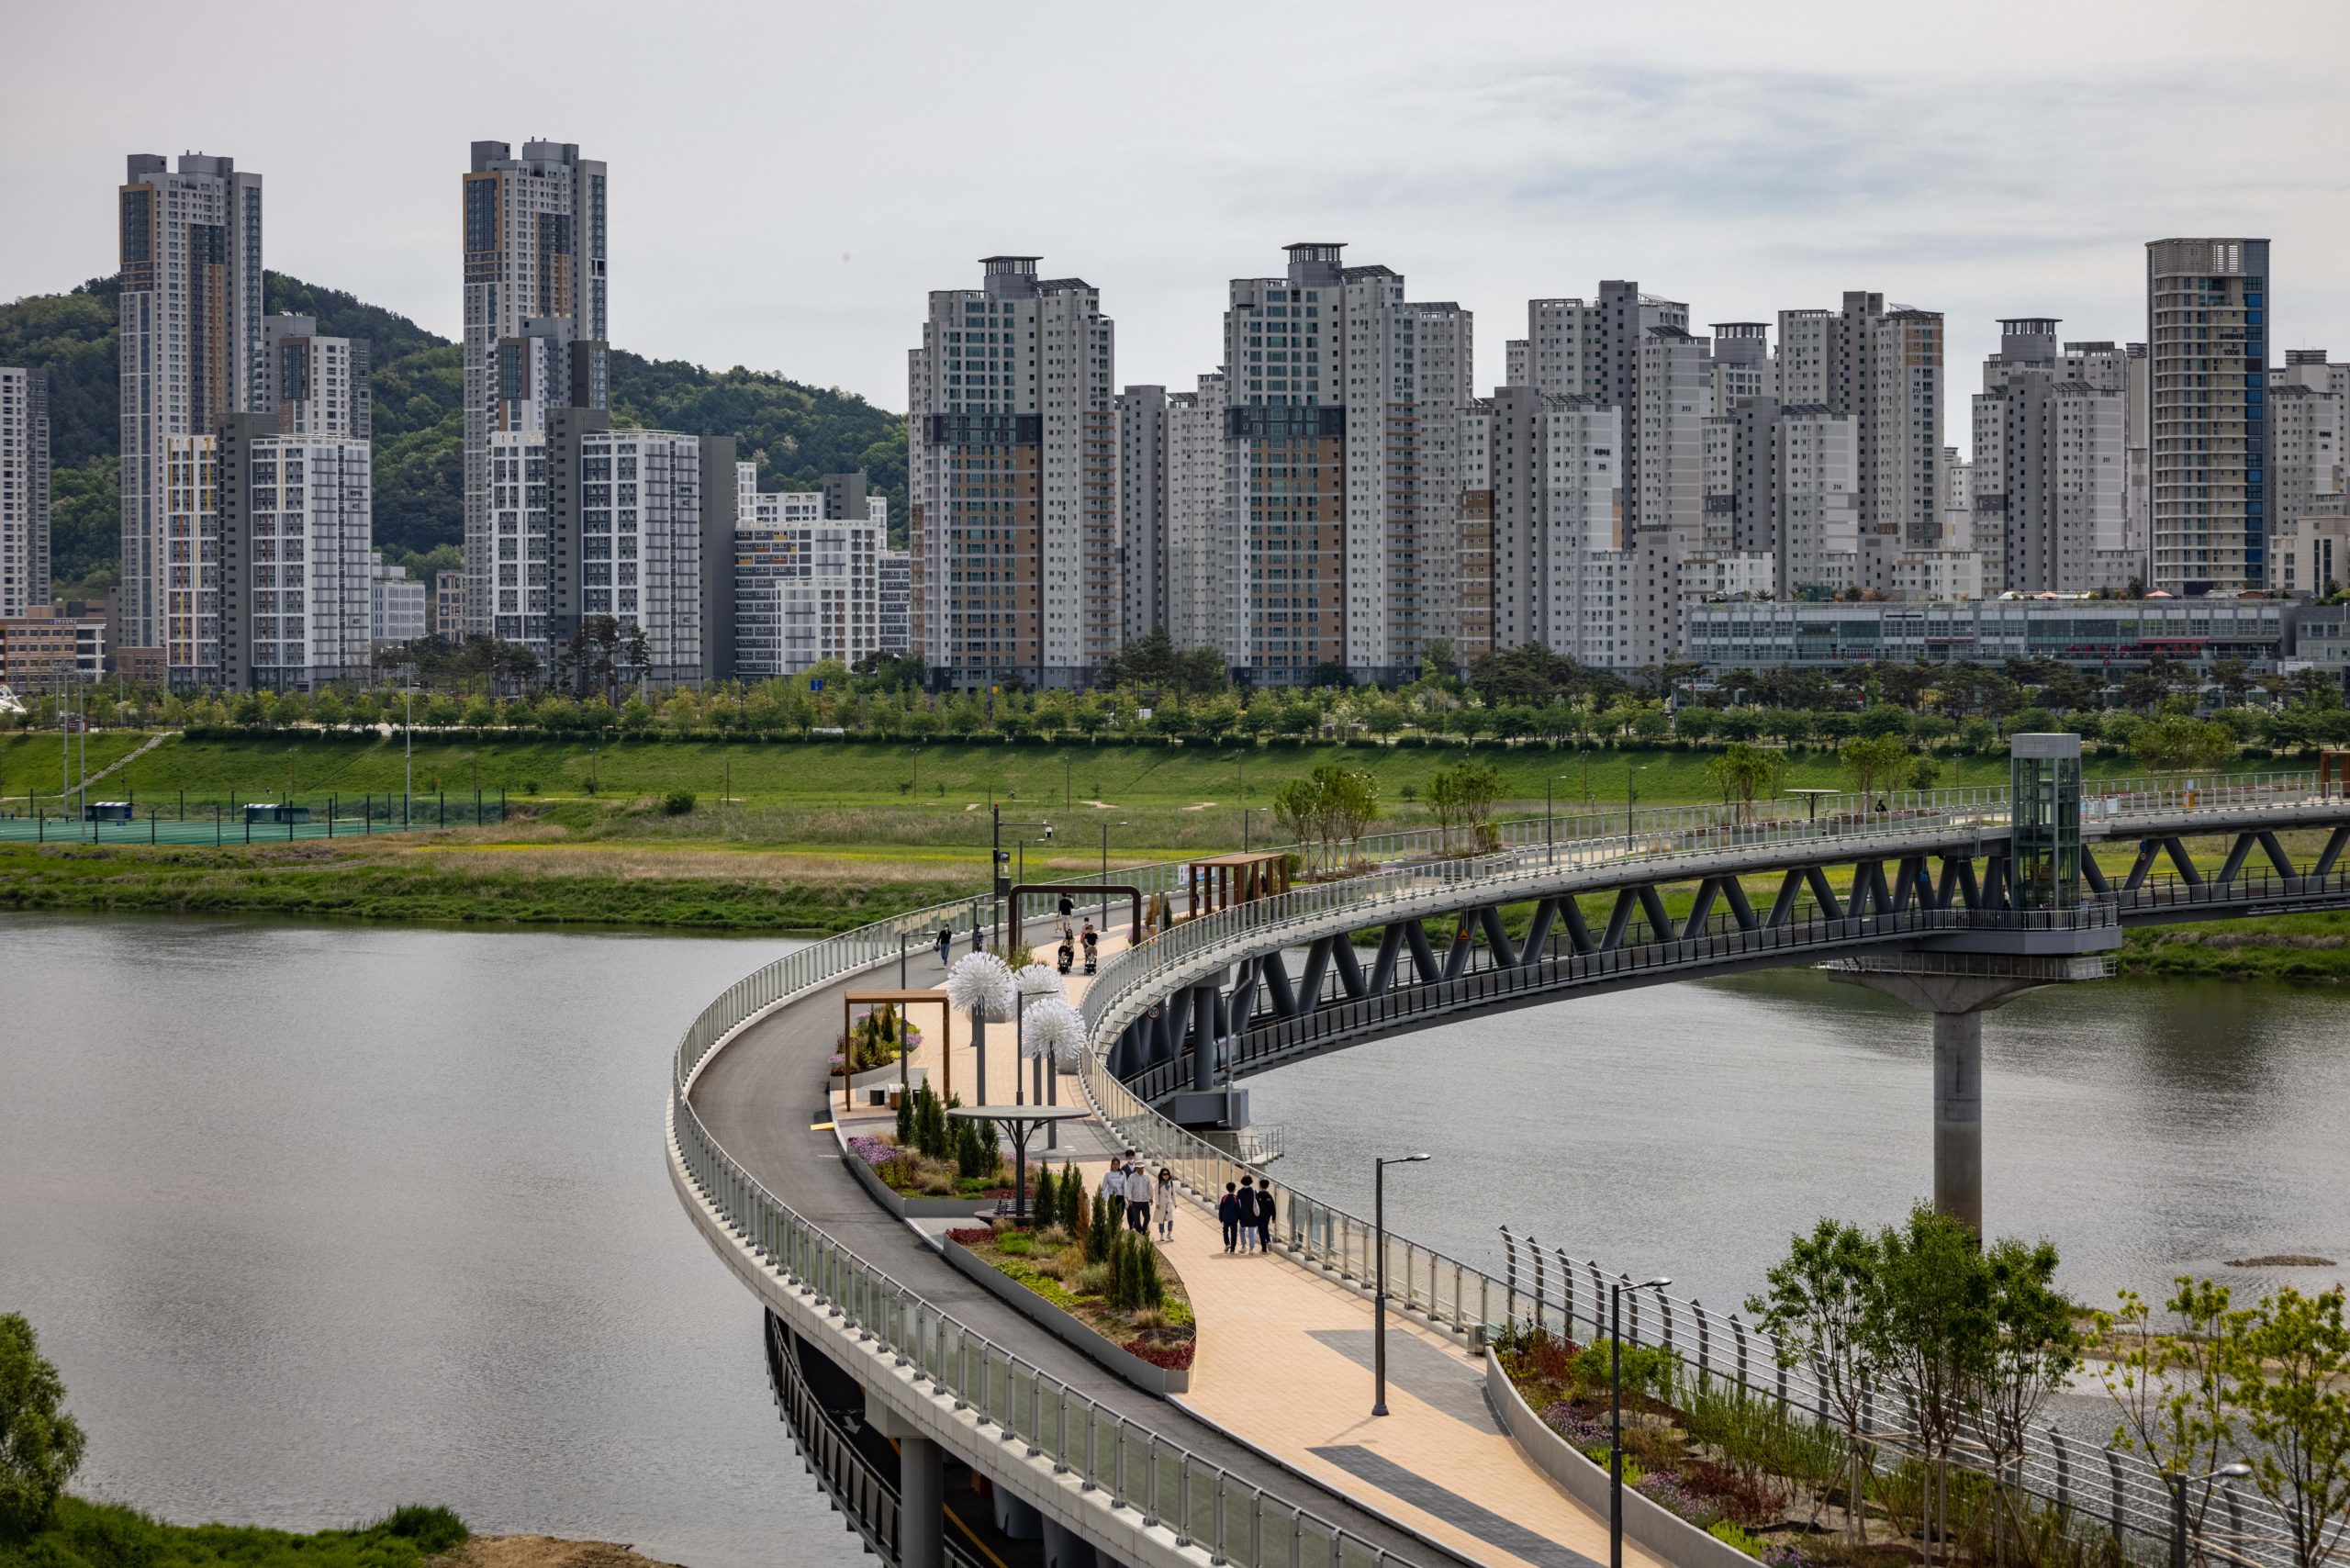 Circular bridge in Sejong, korea